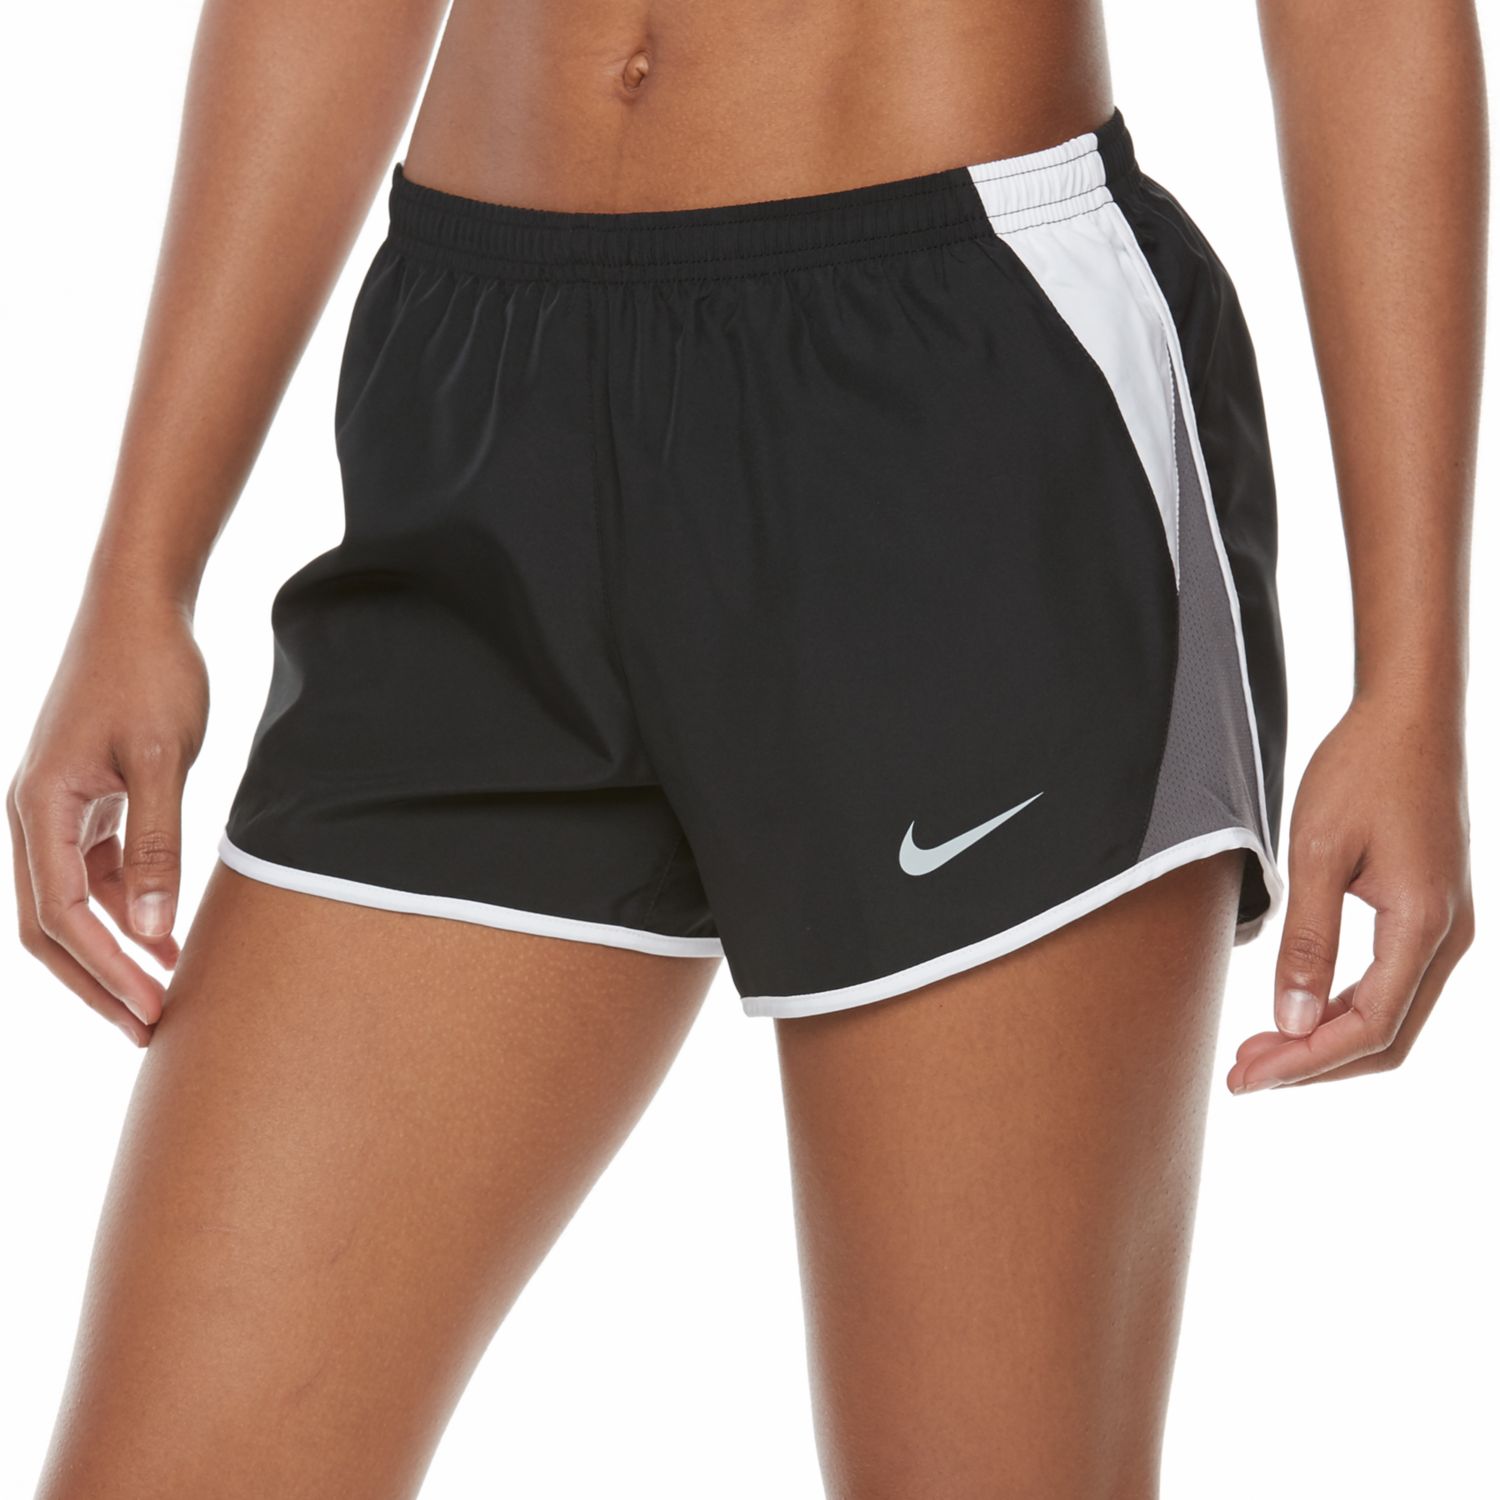 Women's Nike Dry Running Shorts